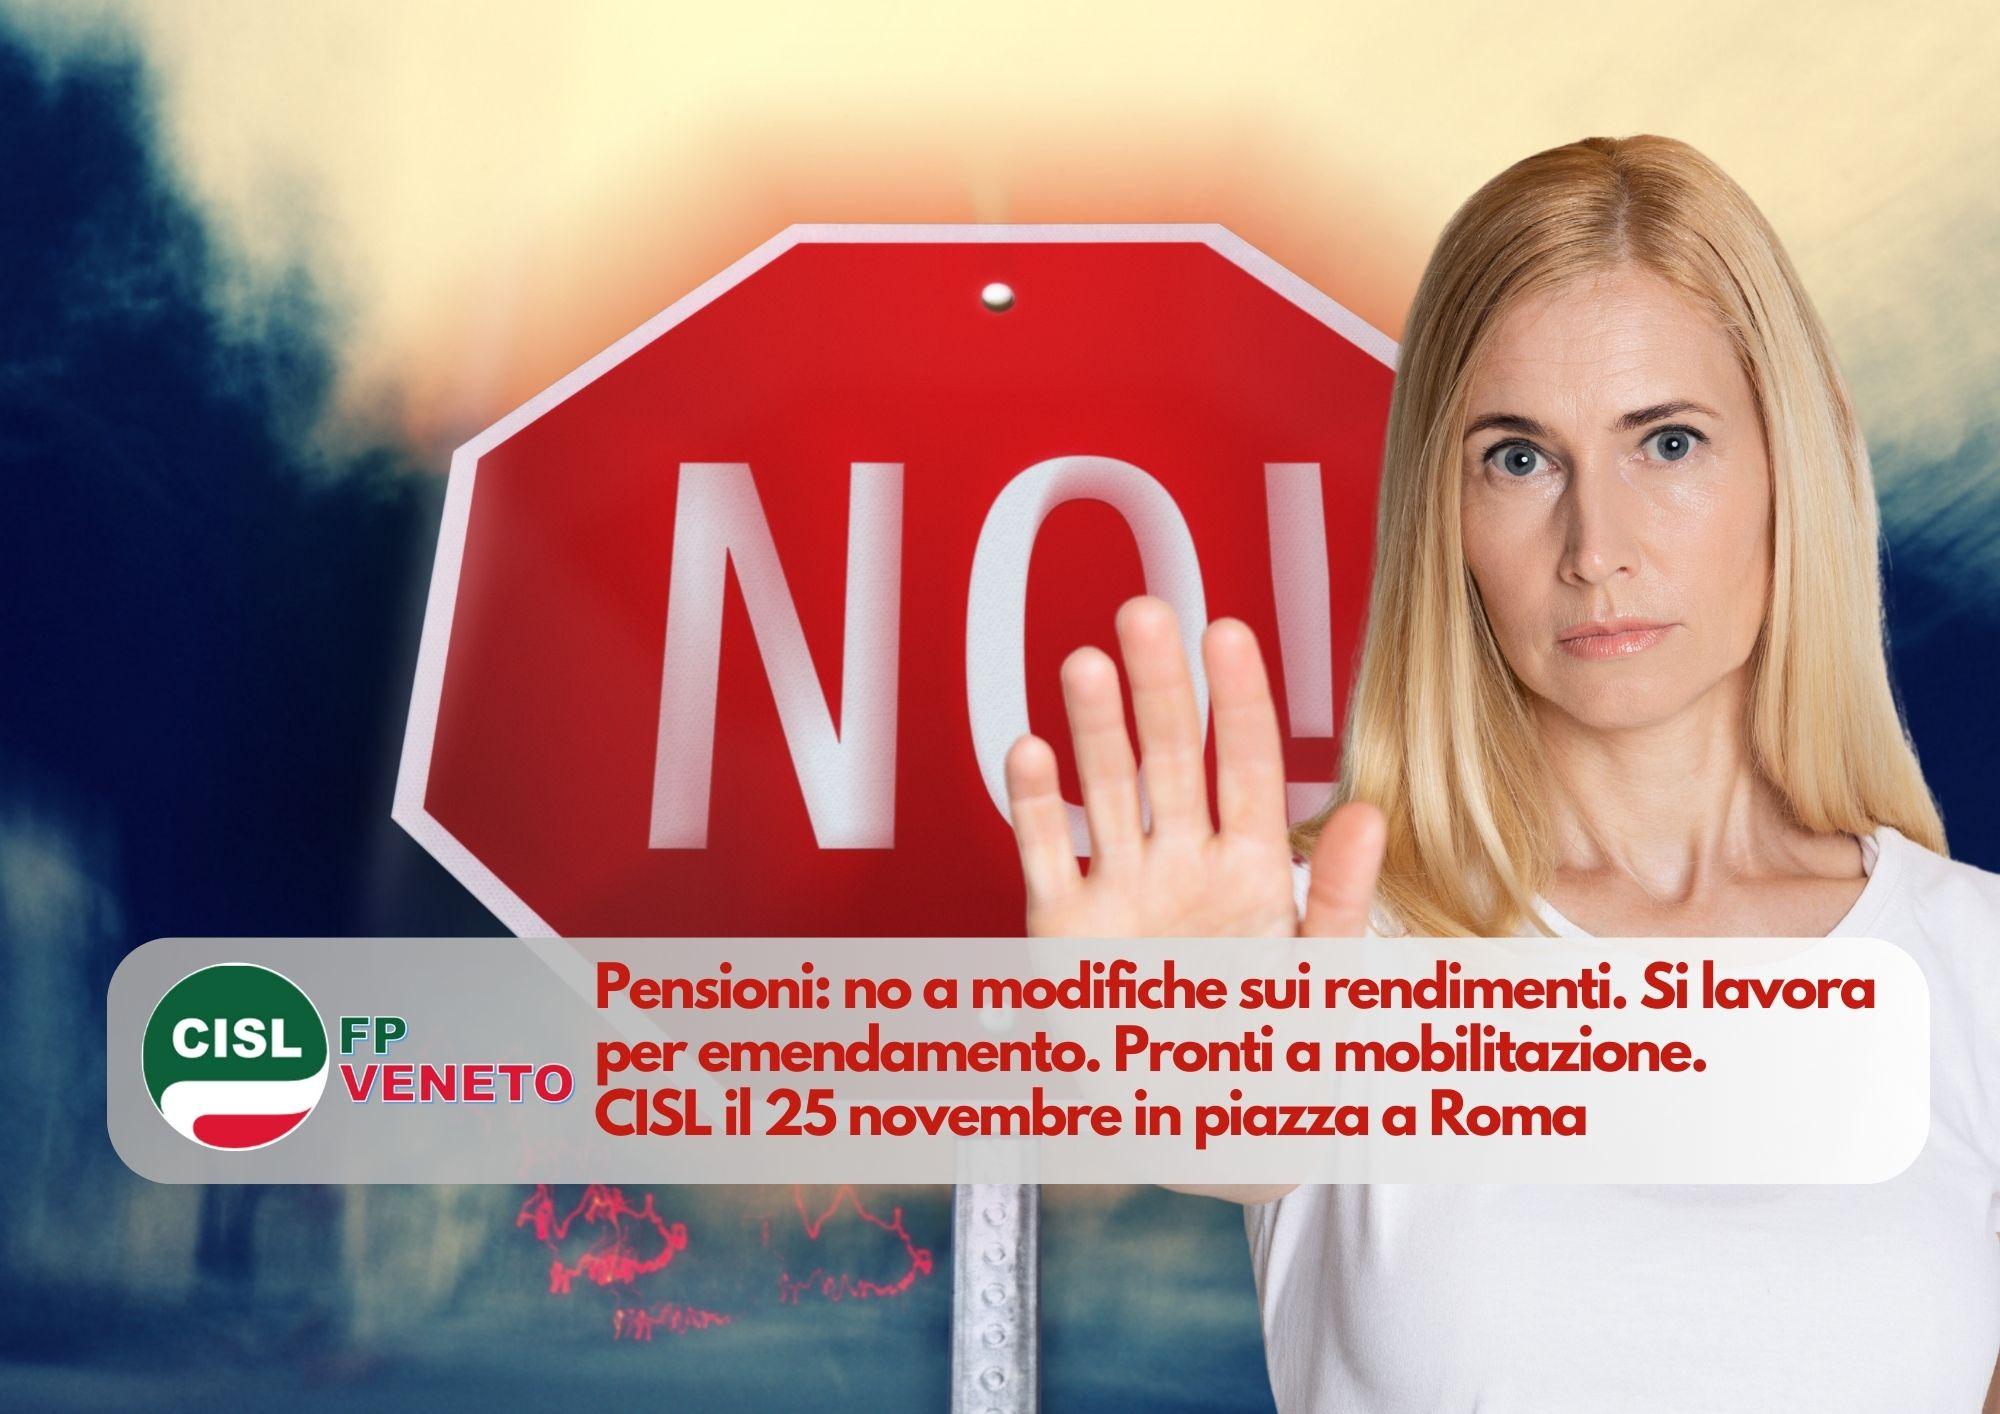 CISL FP Veneto. Pensioni: no a modifiche sui rendimenti. Si lavora per emendamento. Pronti a mobilitazione